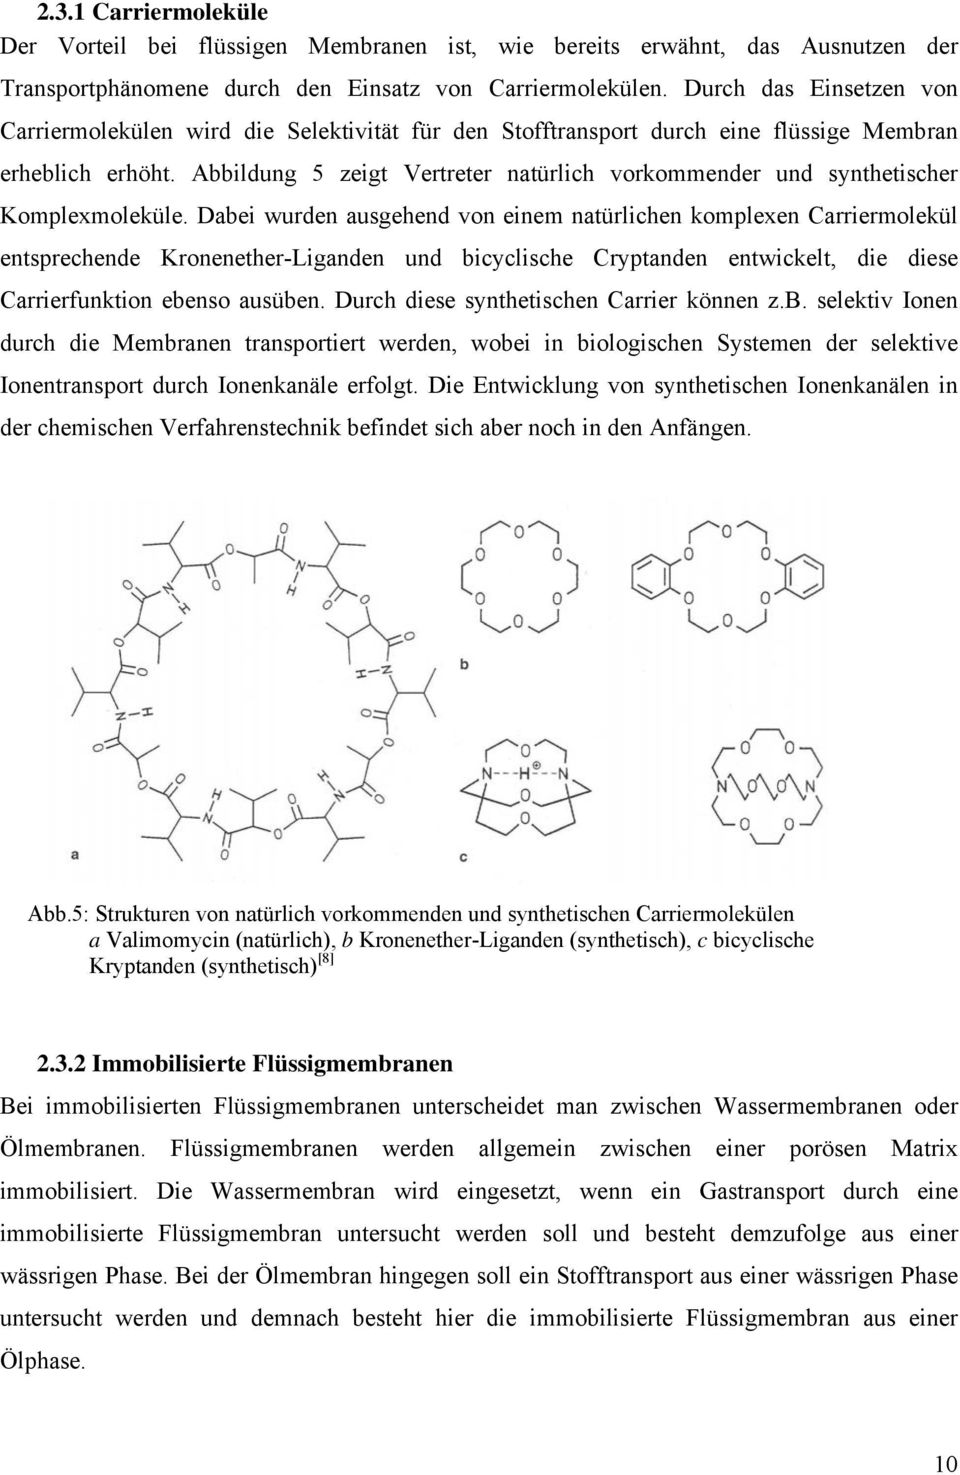 Abbildung 5 zeigt Vertreter natürlich vorkommender und synthetischer Komplexmoleküle.